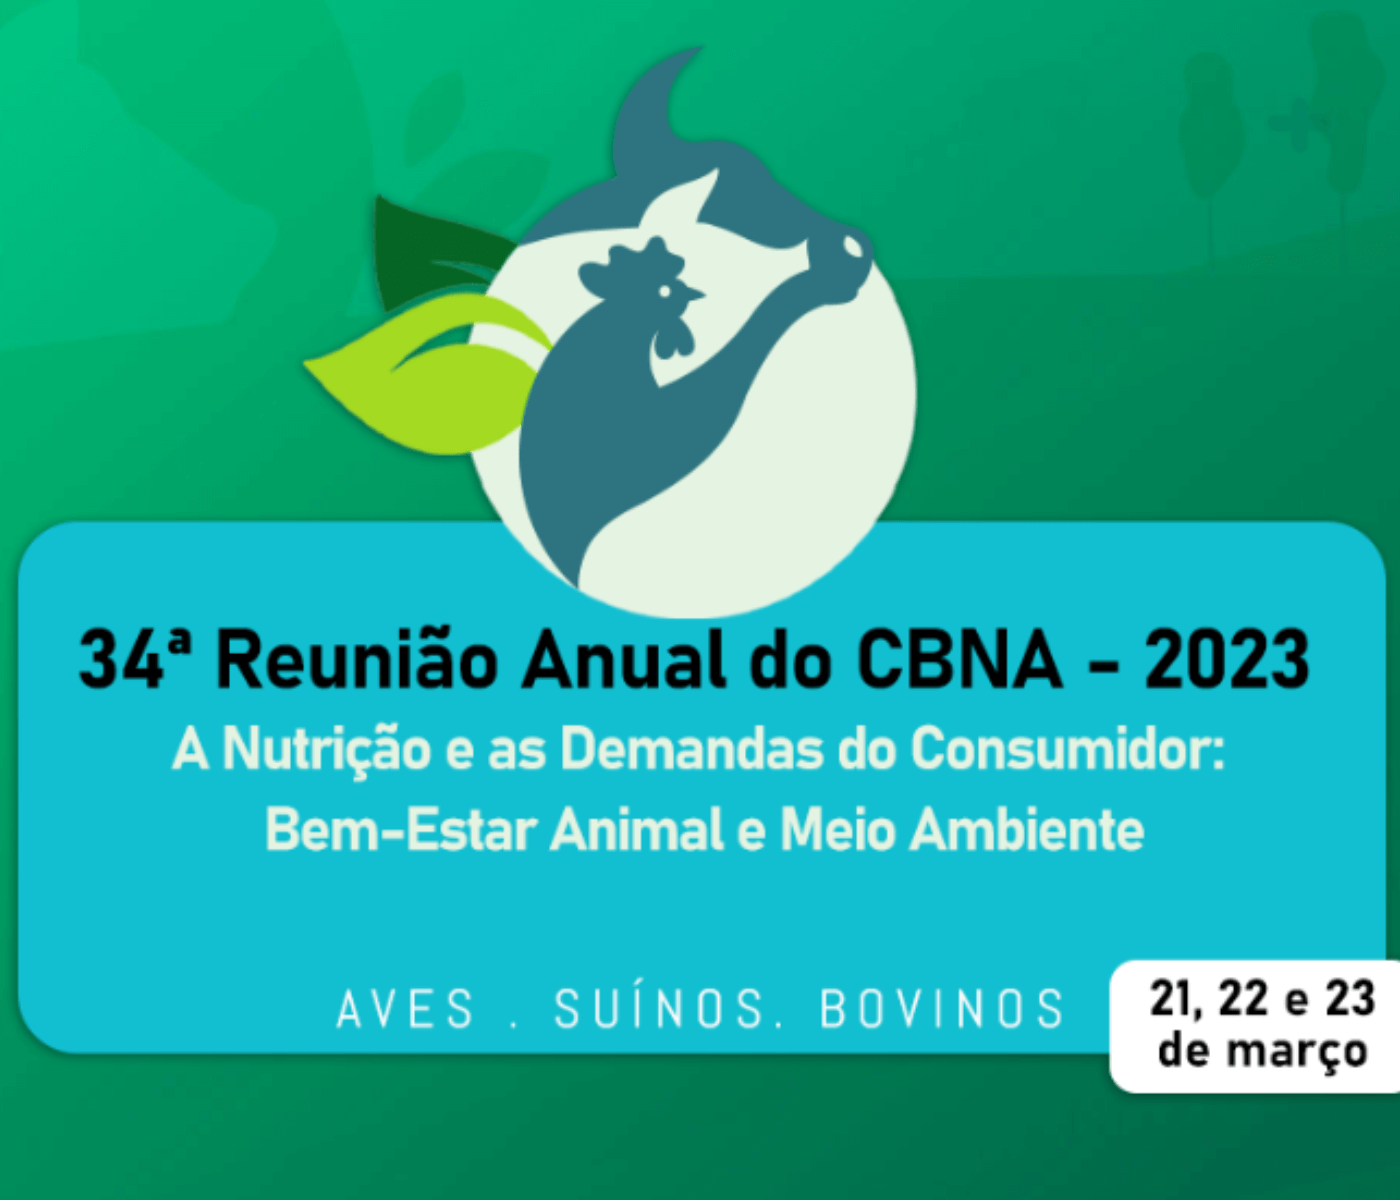 34ª Reunião Anual do CBNA: Prazo final para inscrição de trabalhos científicos